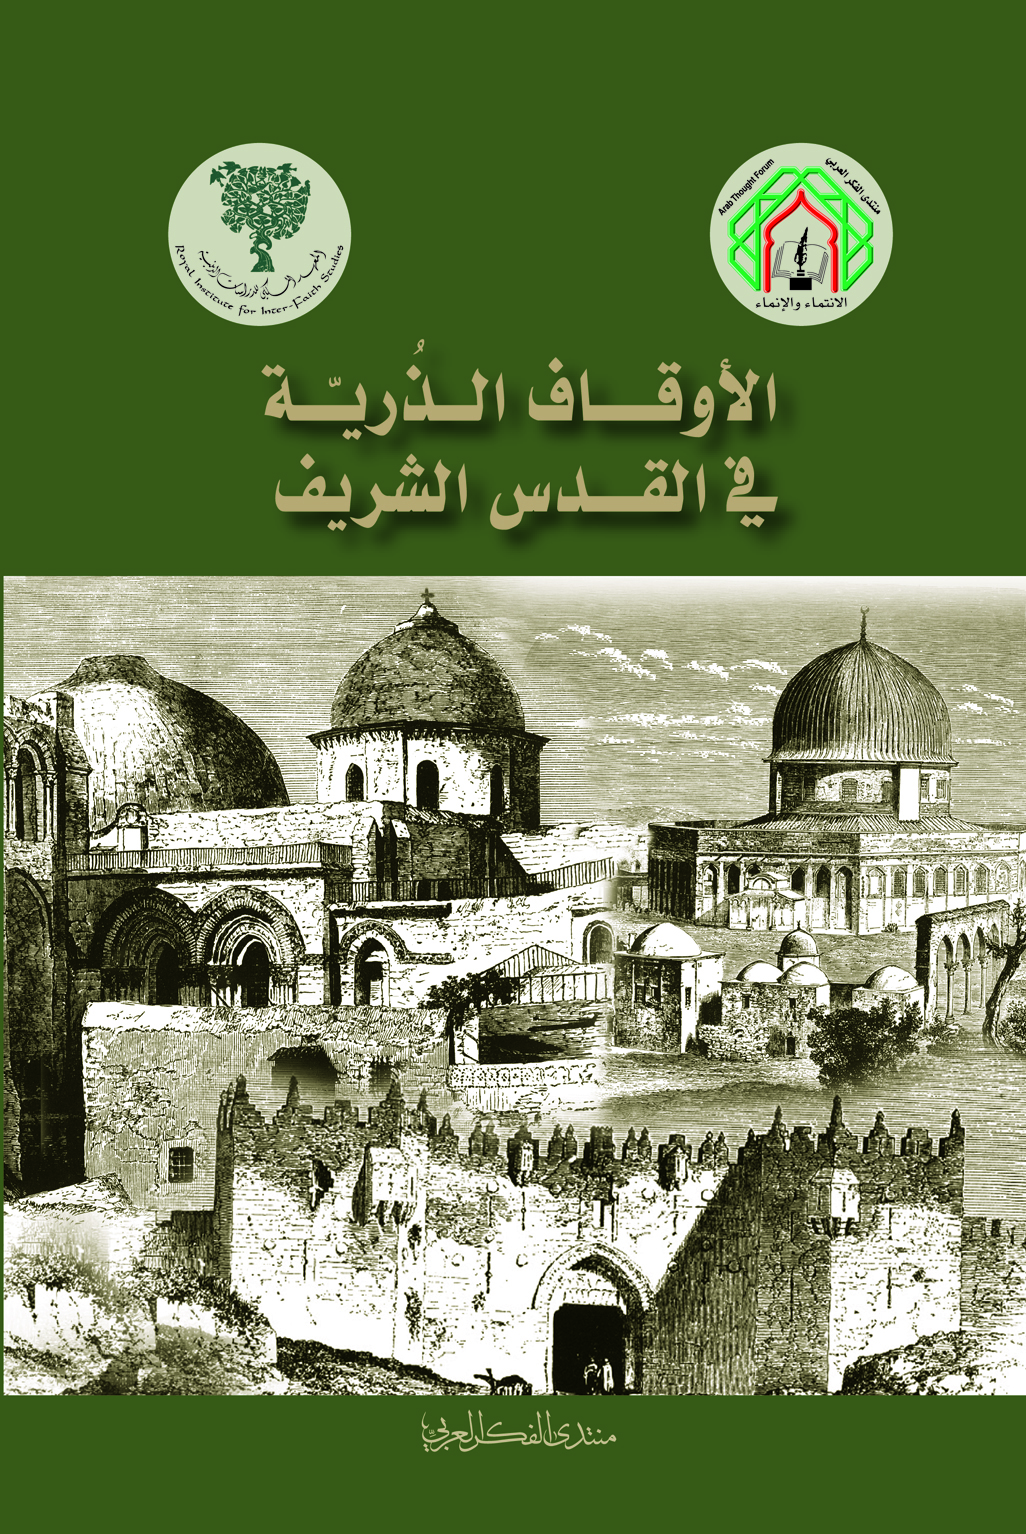 “الأوقاف الذُريّة في القدس الشريف” كتاب جديد لمنتدى الفكر العربي